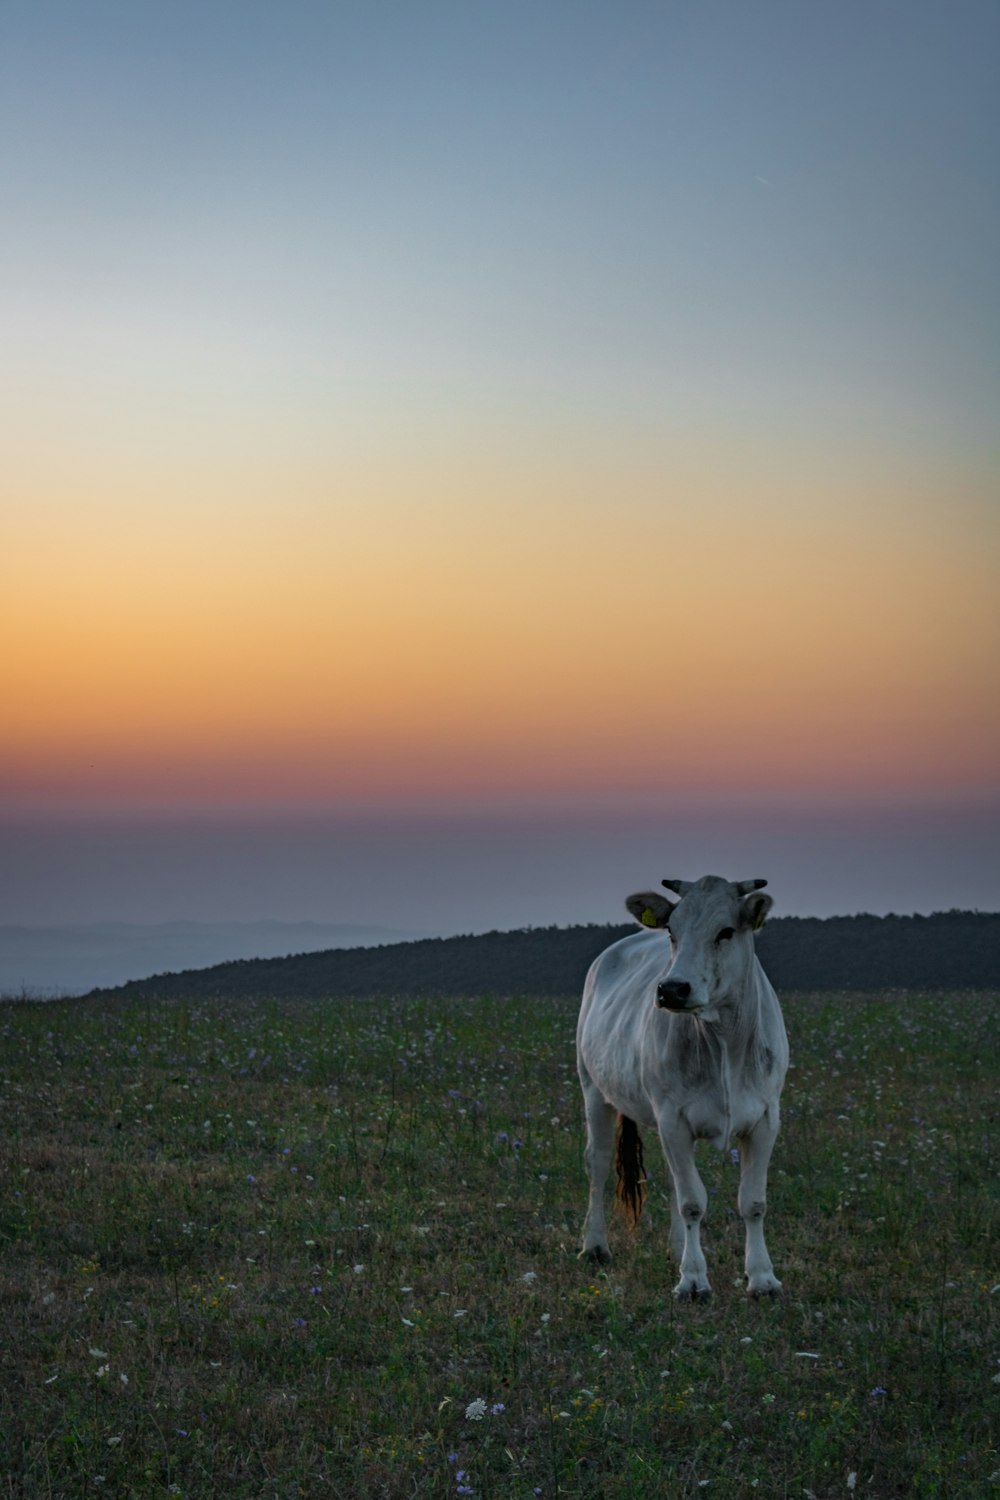 vaca branca no campo verde da grama durante o dia